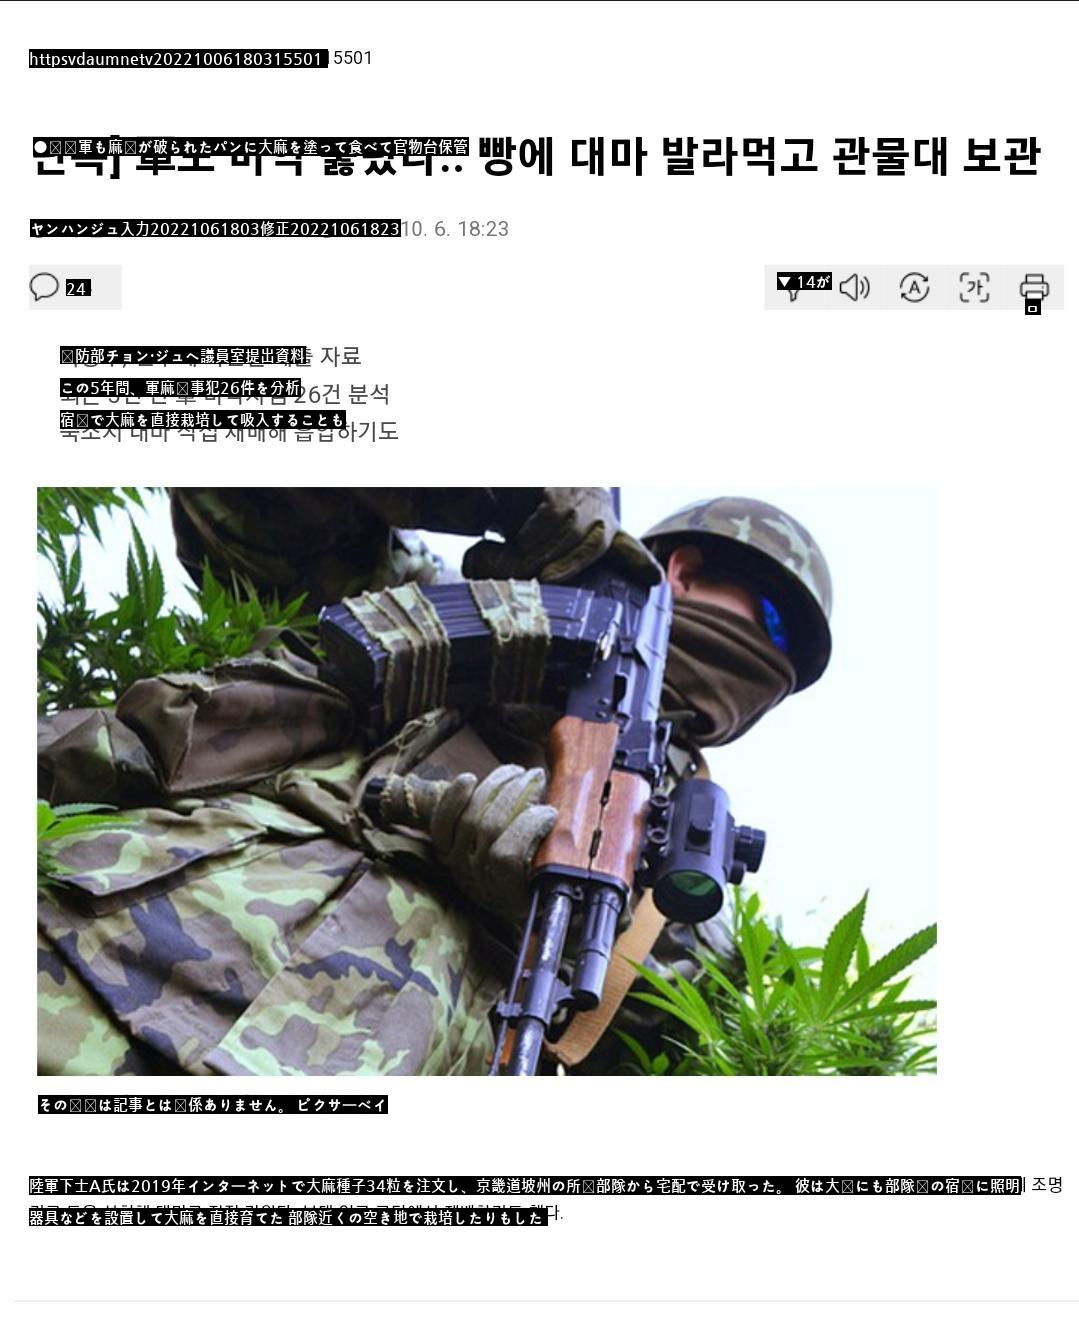 韓国軍にまで広がった麻薬